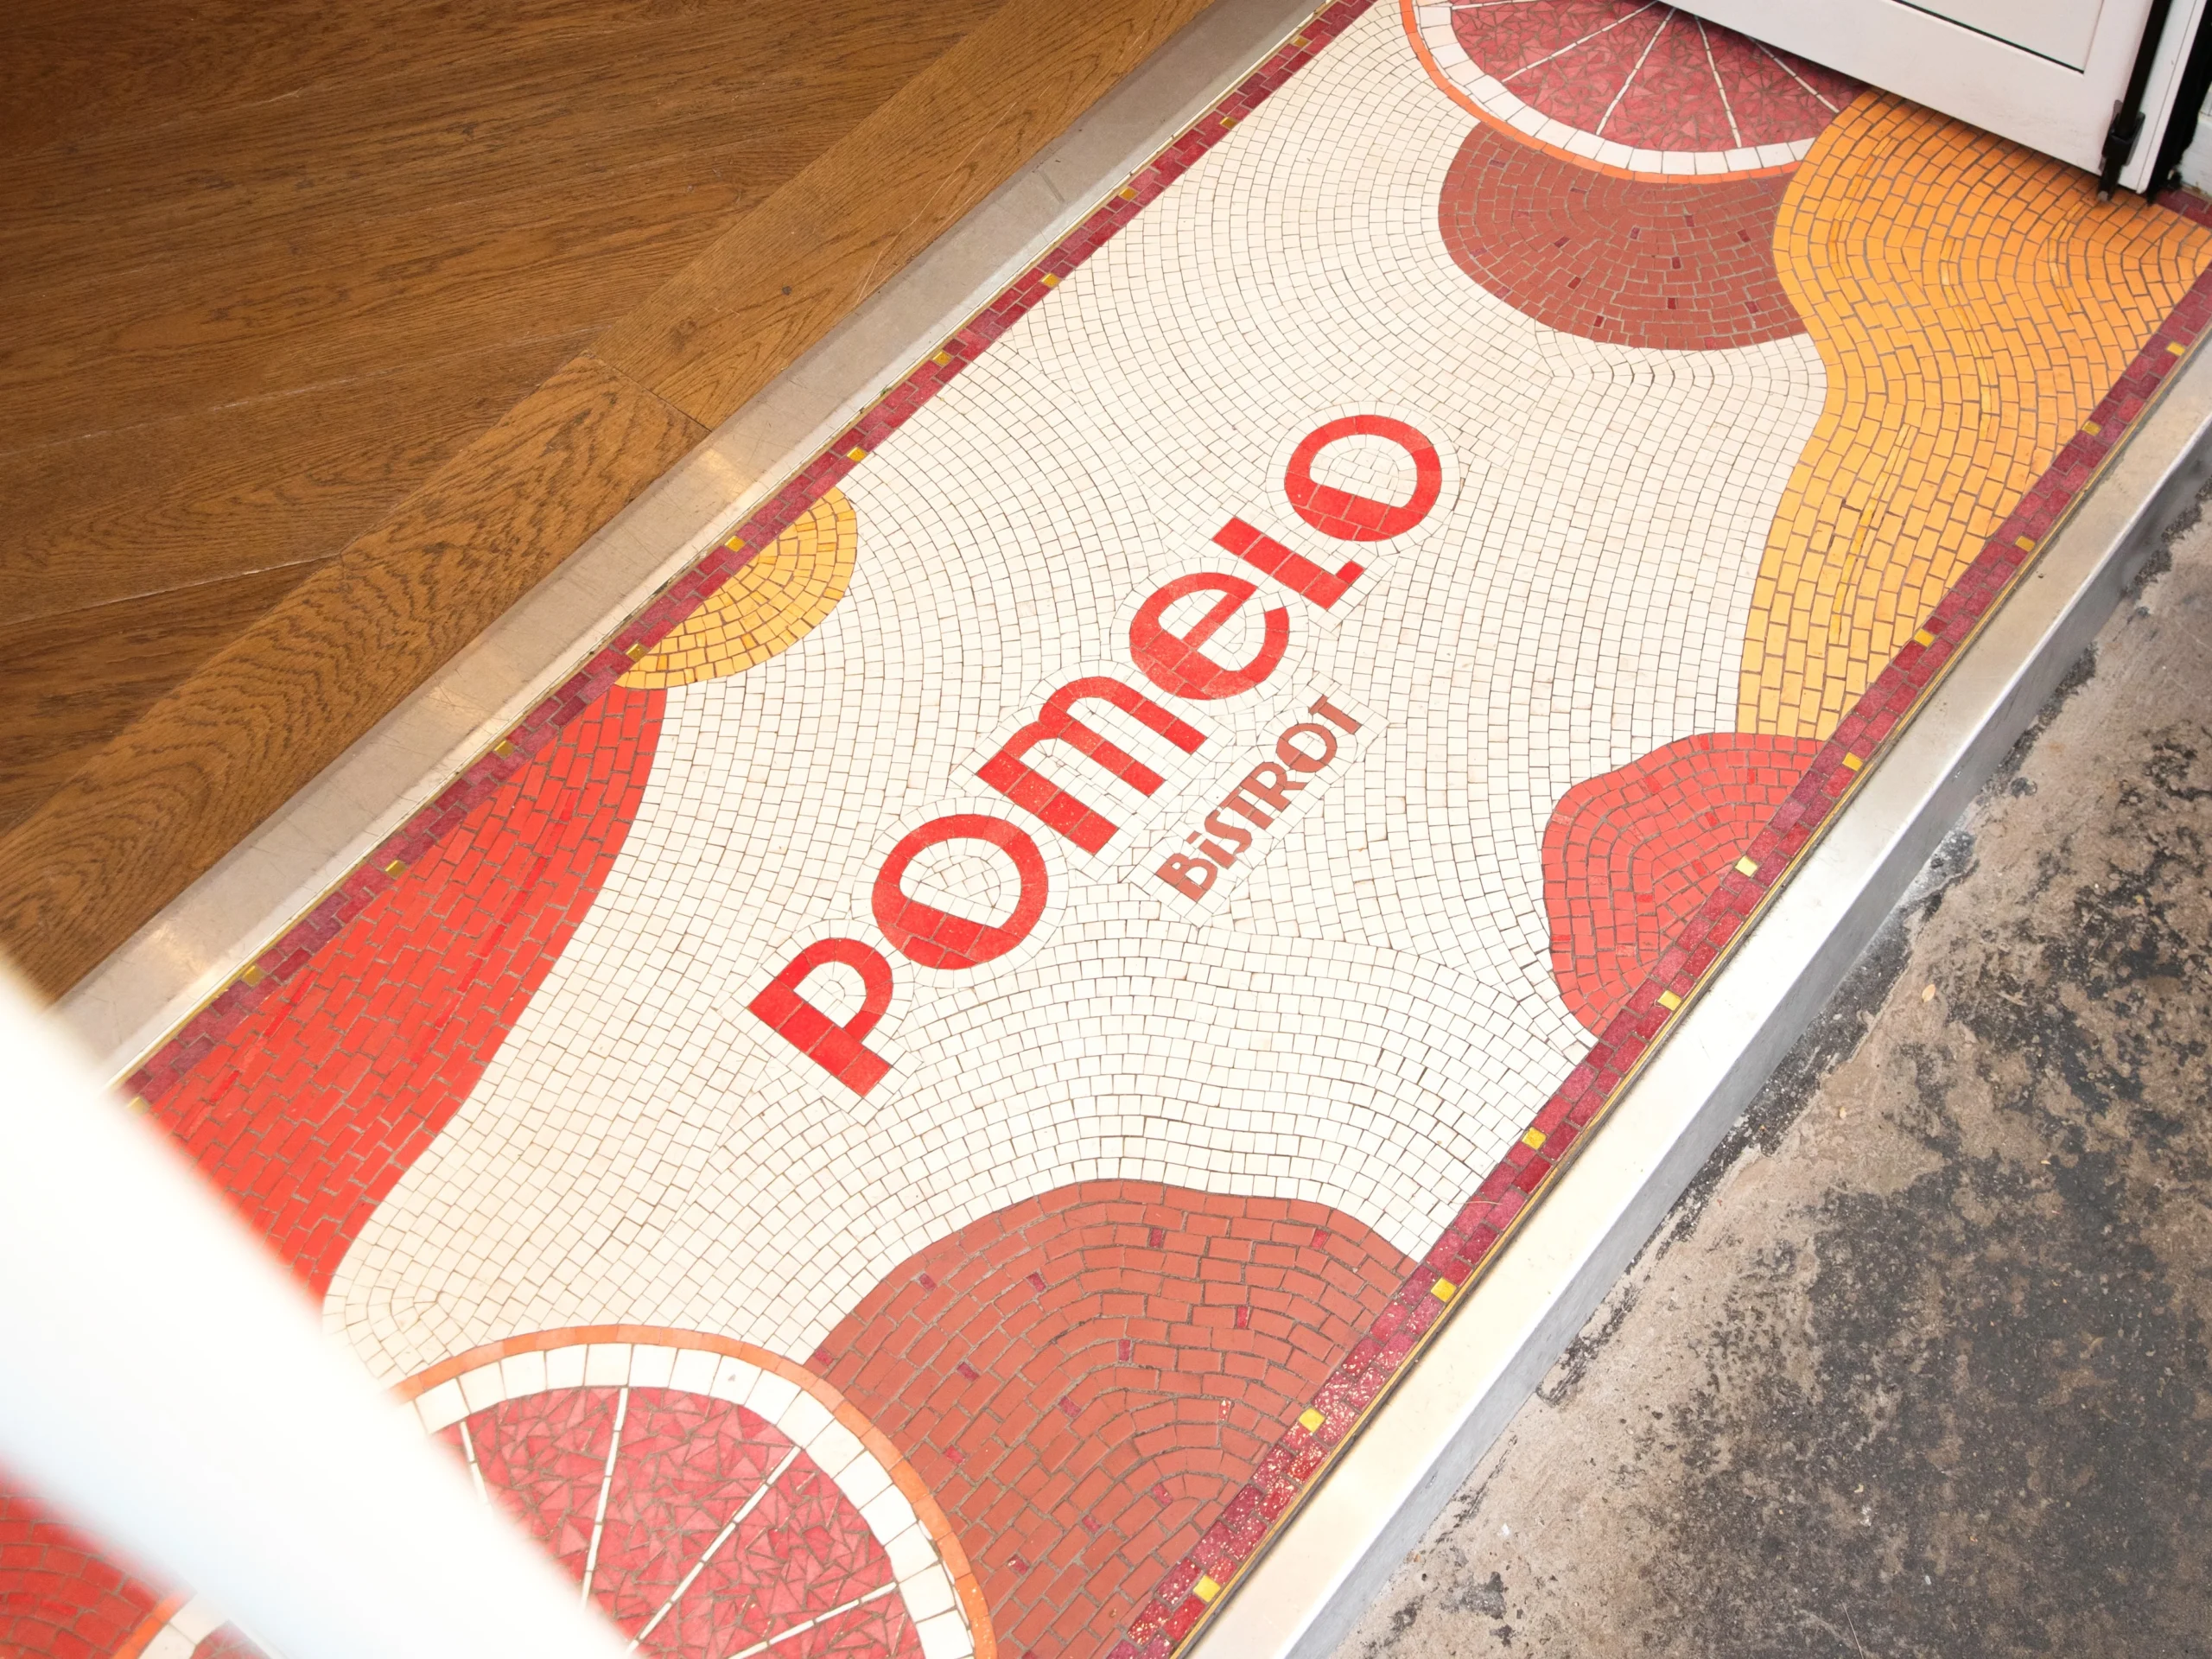 Restaurant Pomelo résultat final